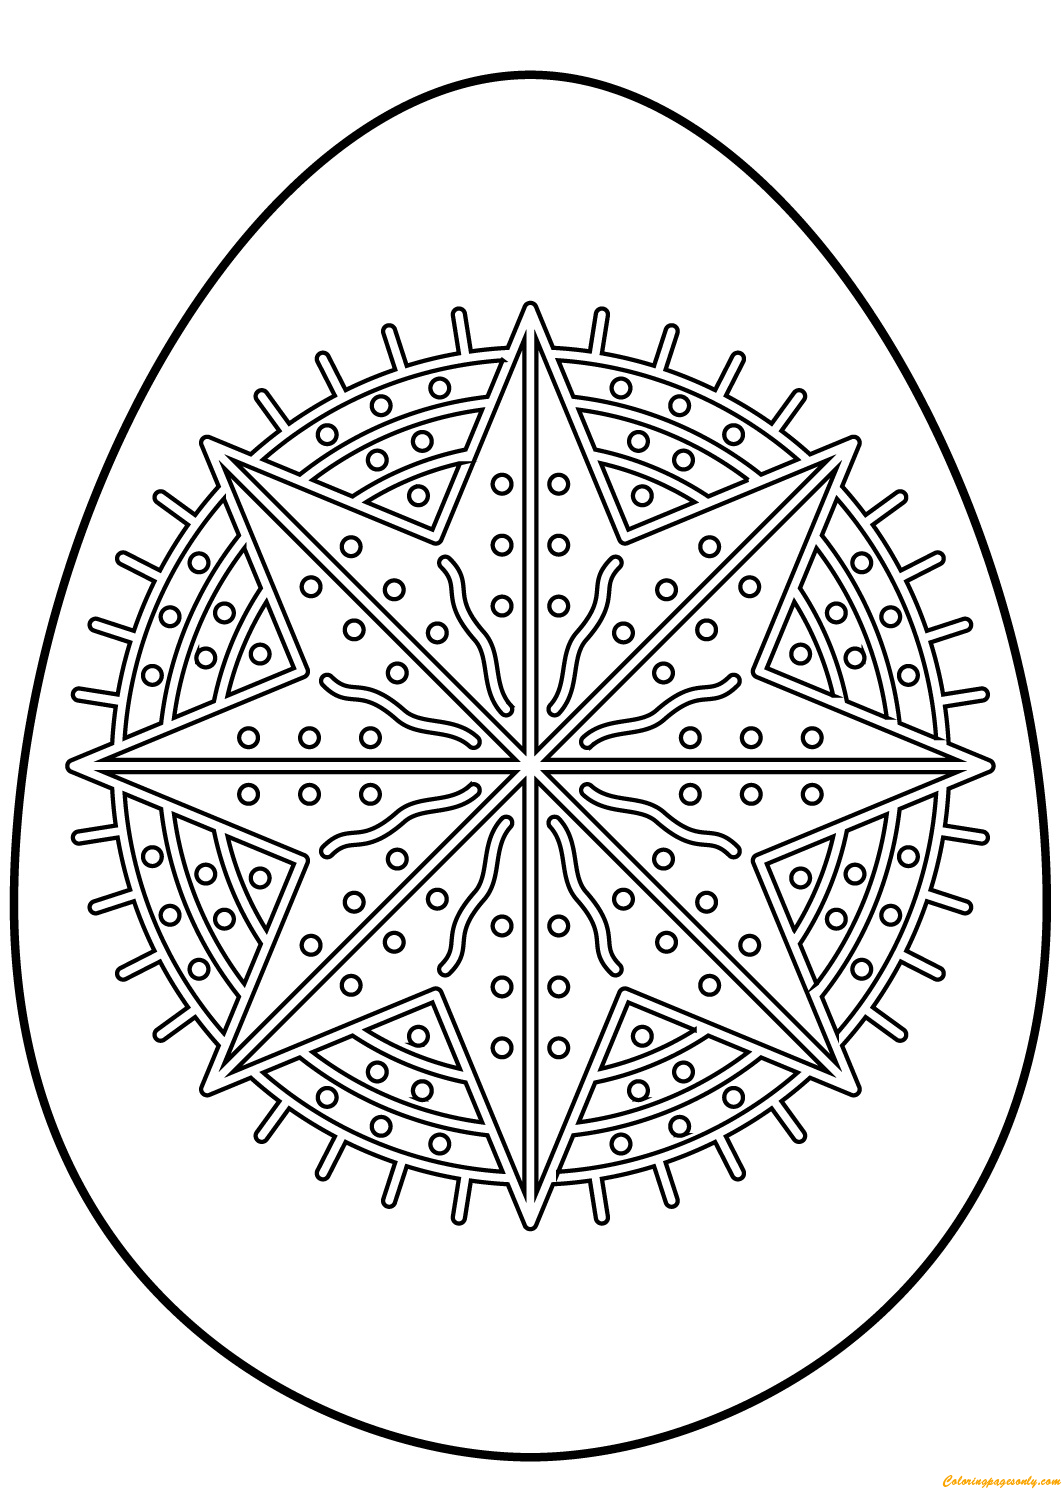 复活节彩蛋与复活节彩蛋中的八角星图案